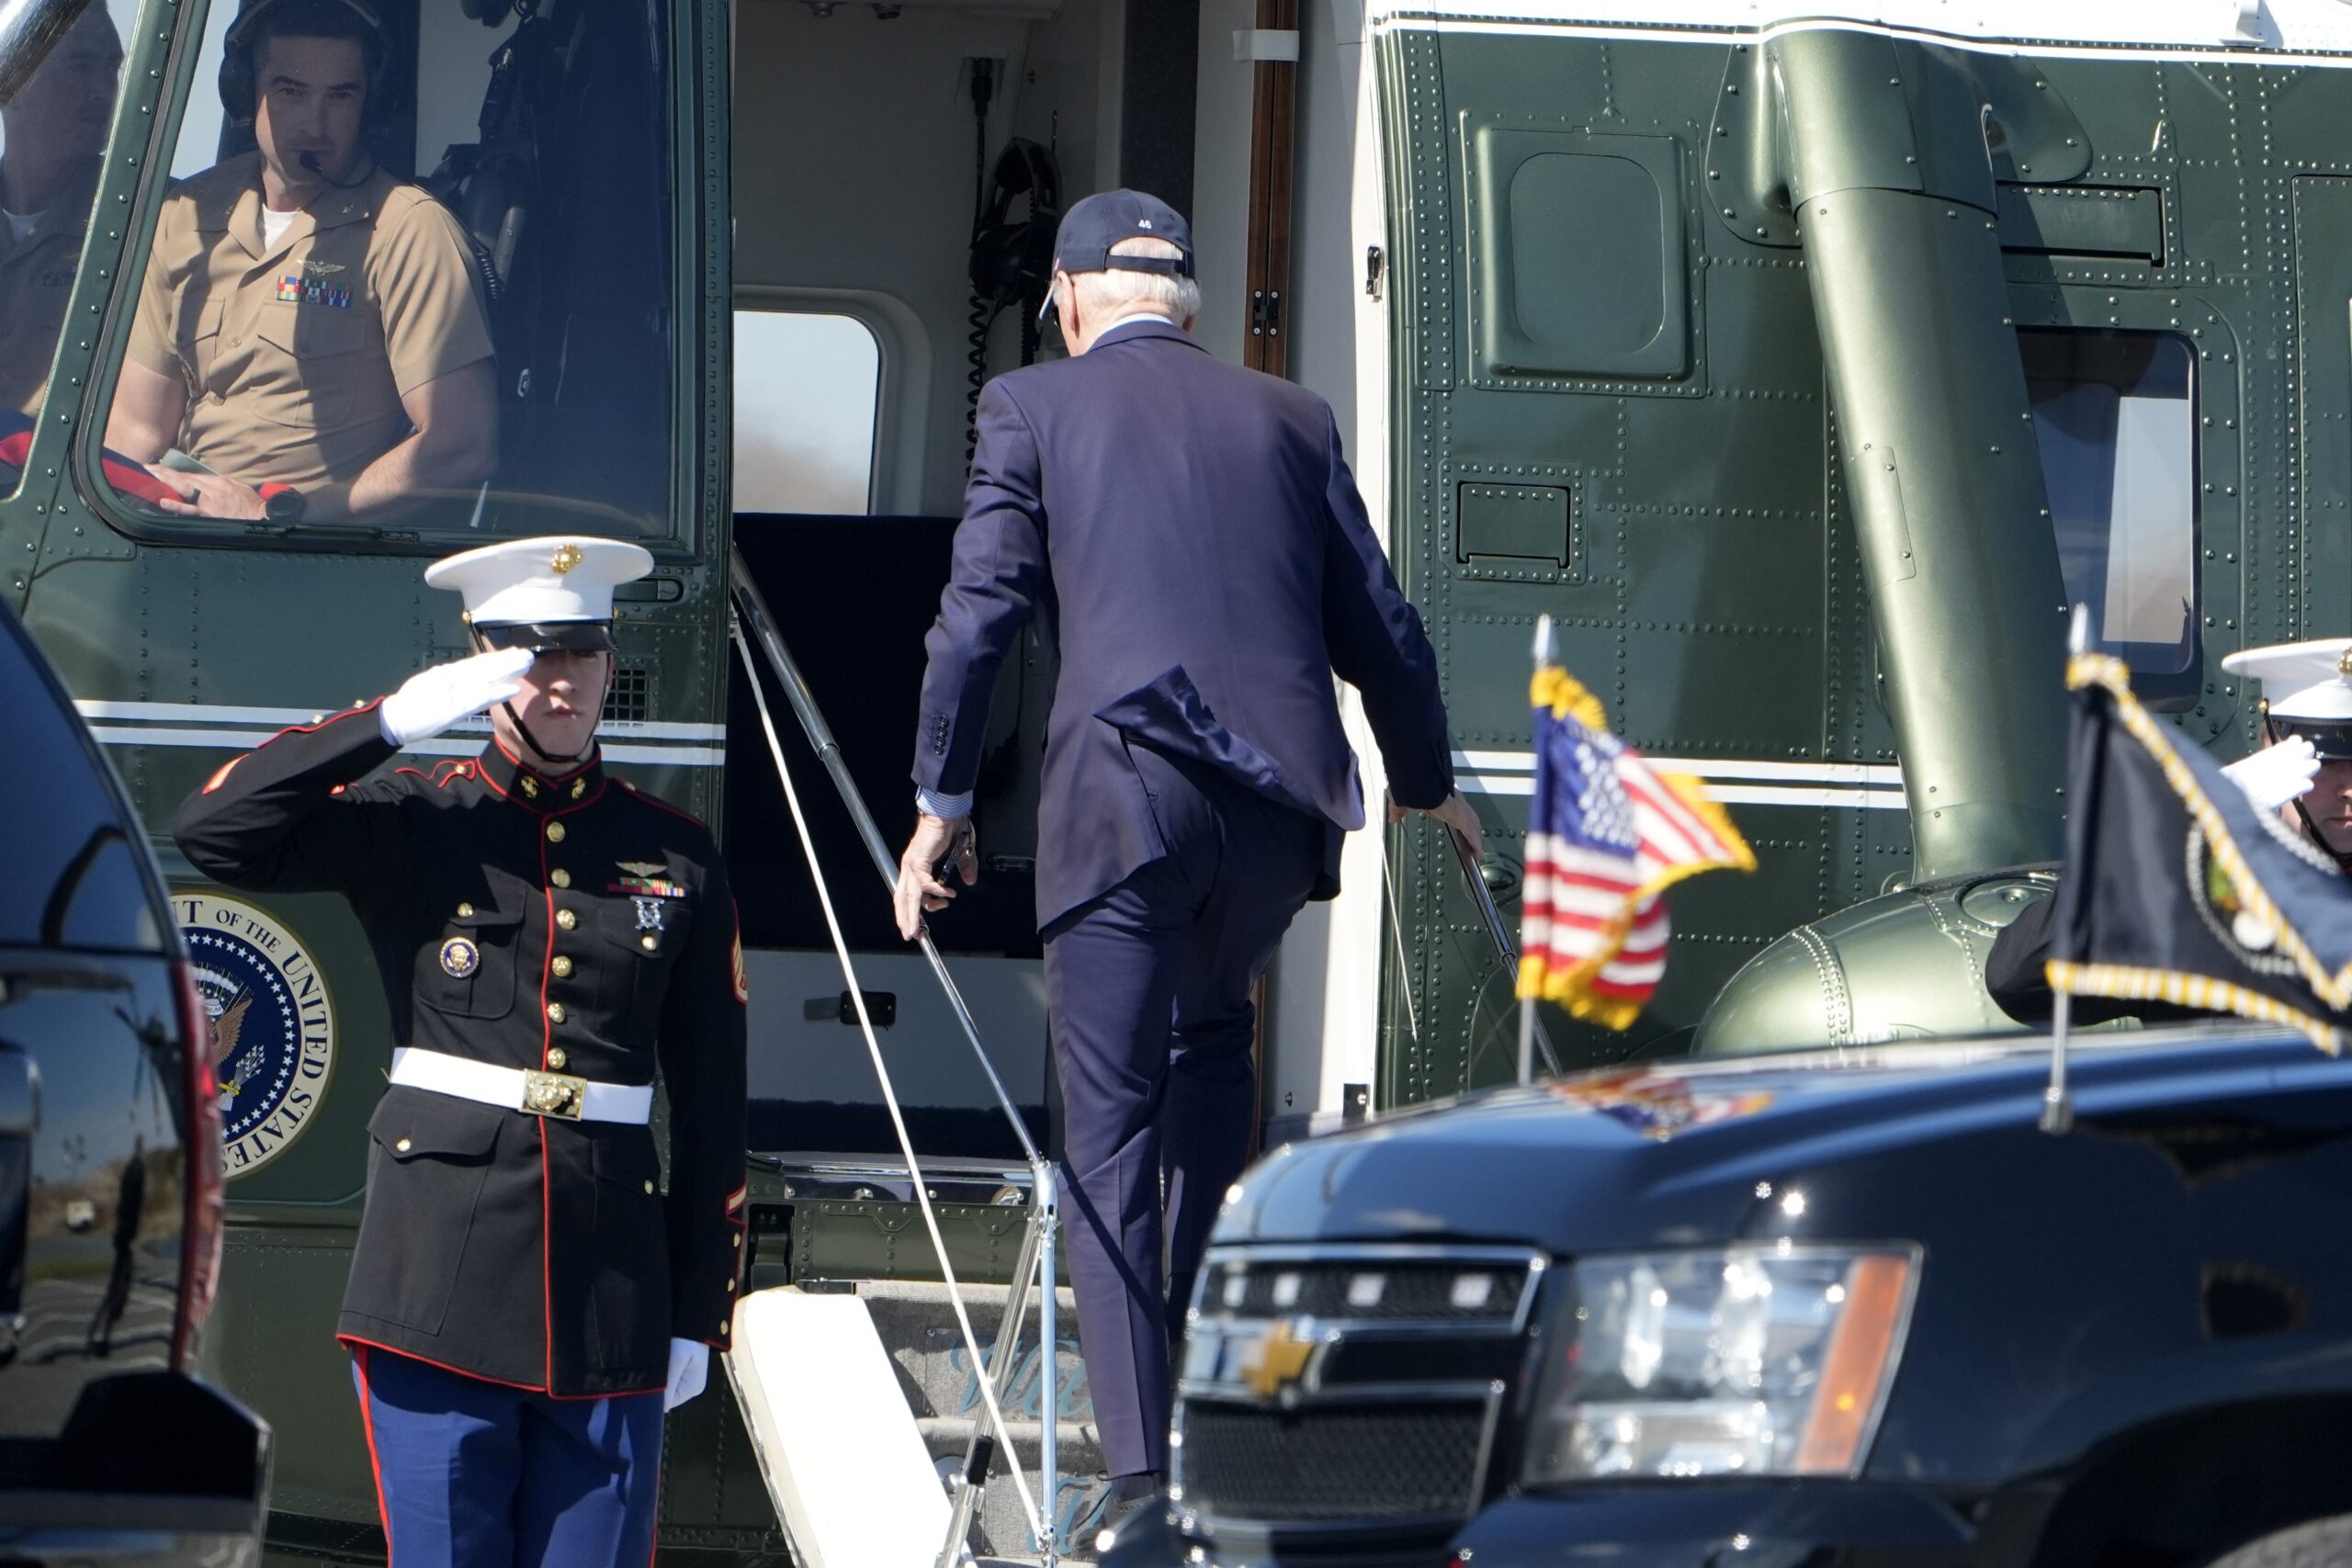 De Amerikaanse president Joe Biden stapt in de militaire helikopter Marine One, om terug te keren naar het Witte Huis vanuit zijn zomerverblijf Rehoboth Beach in Delaware.  